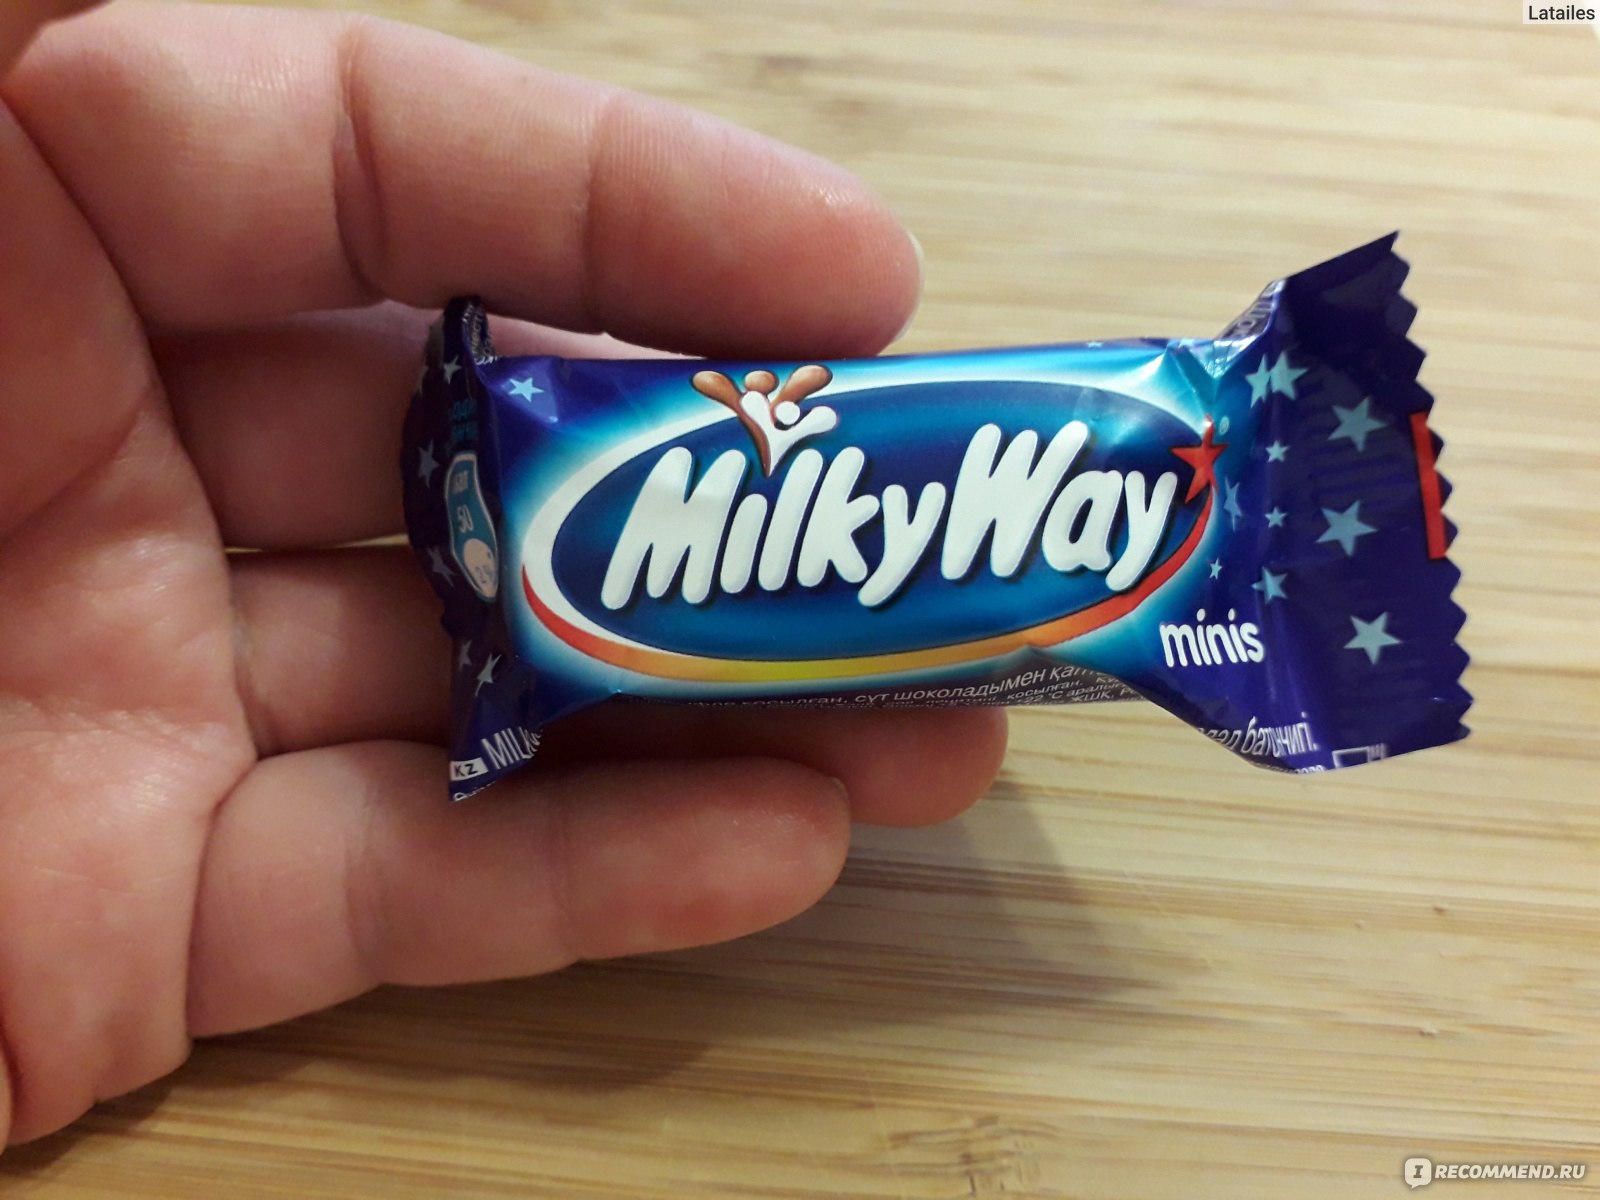 Молочный шоколад Mars Milky Way minis- это вкусно,качественно, нежно и удоб...